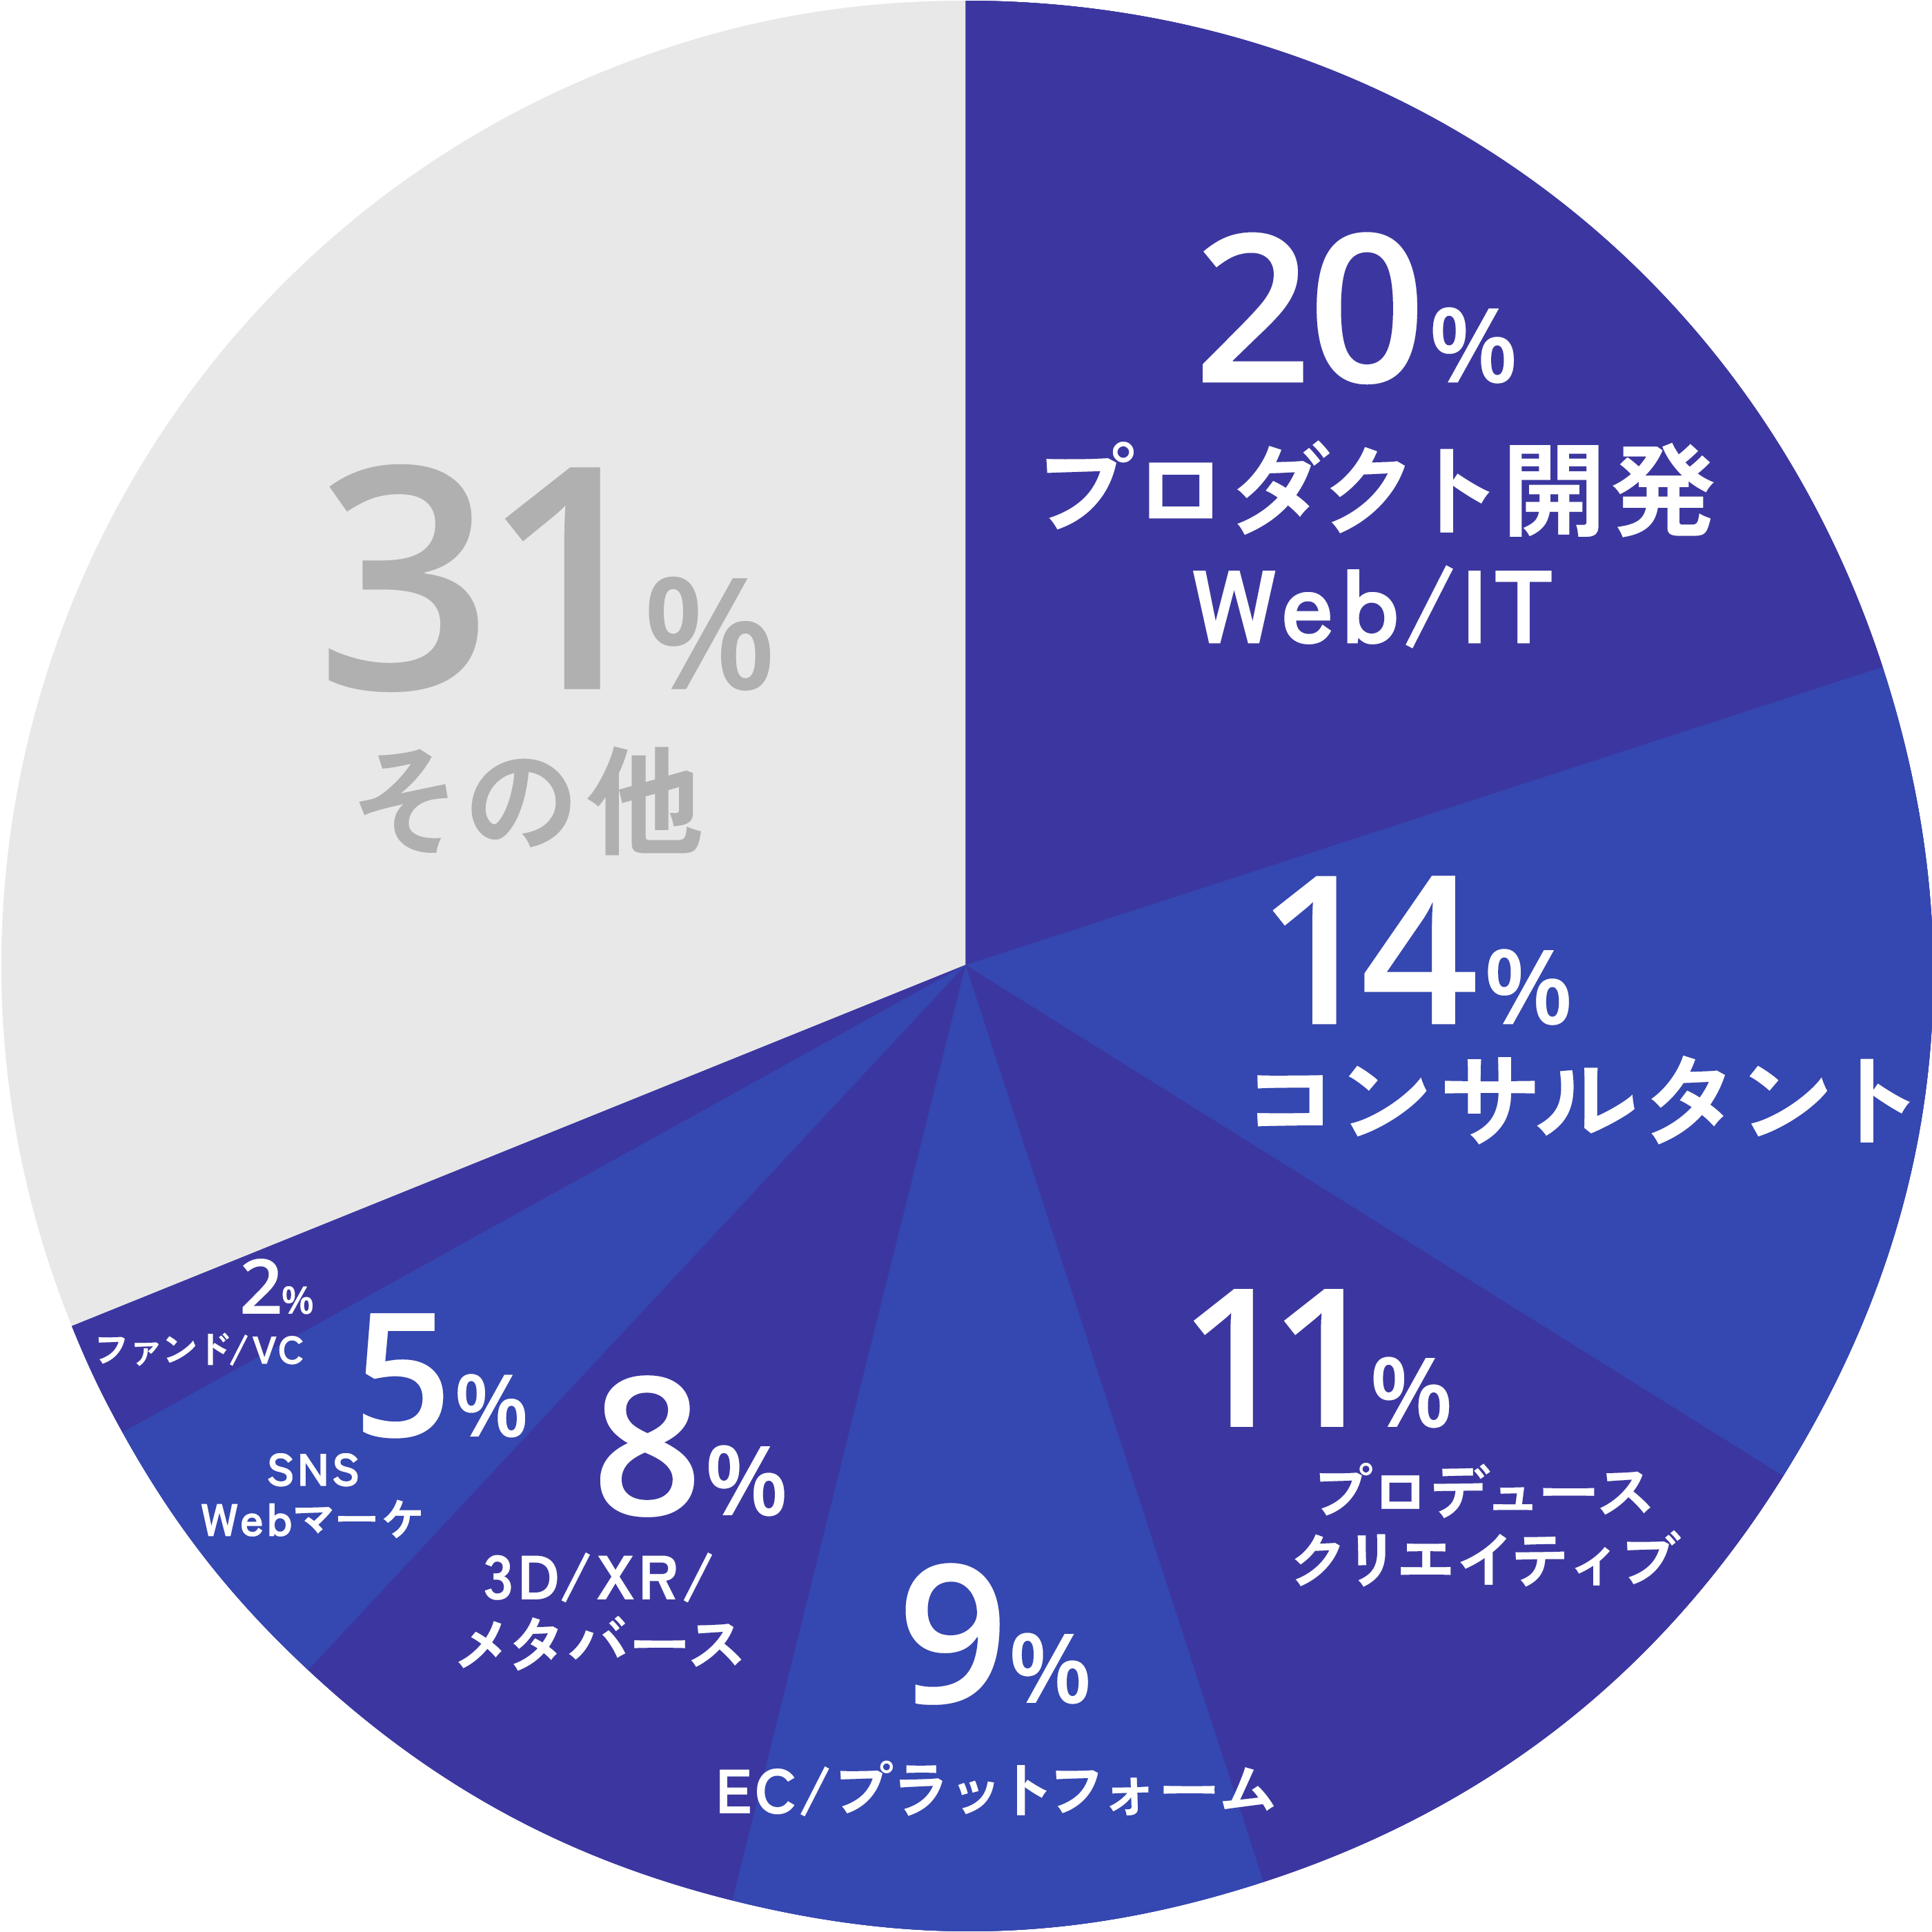 クライアントの業種の内訳、20%がプロダクト開発・Web/IT、14％がコンサルタント、11%がプロデュース・クリエイティブ、9%がEC/プラットフォーム、8%が3D/XR/メタバース、5%がSNS/Webマーケ、2％がファンド/VCというように最新型ビジネスにも対応している。